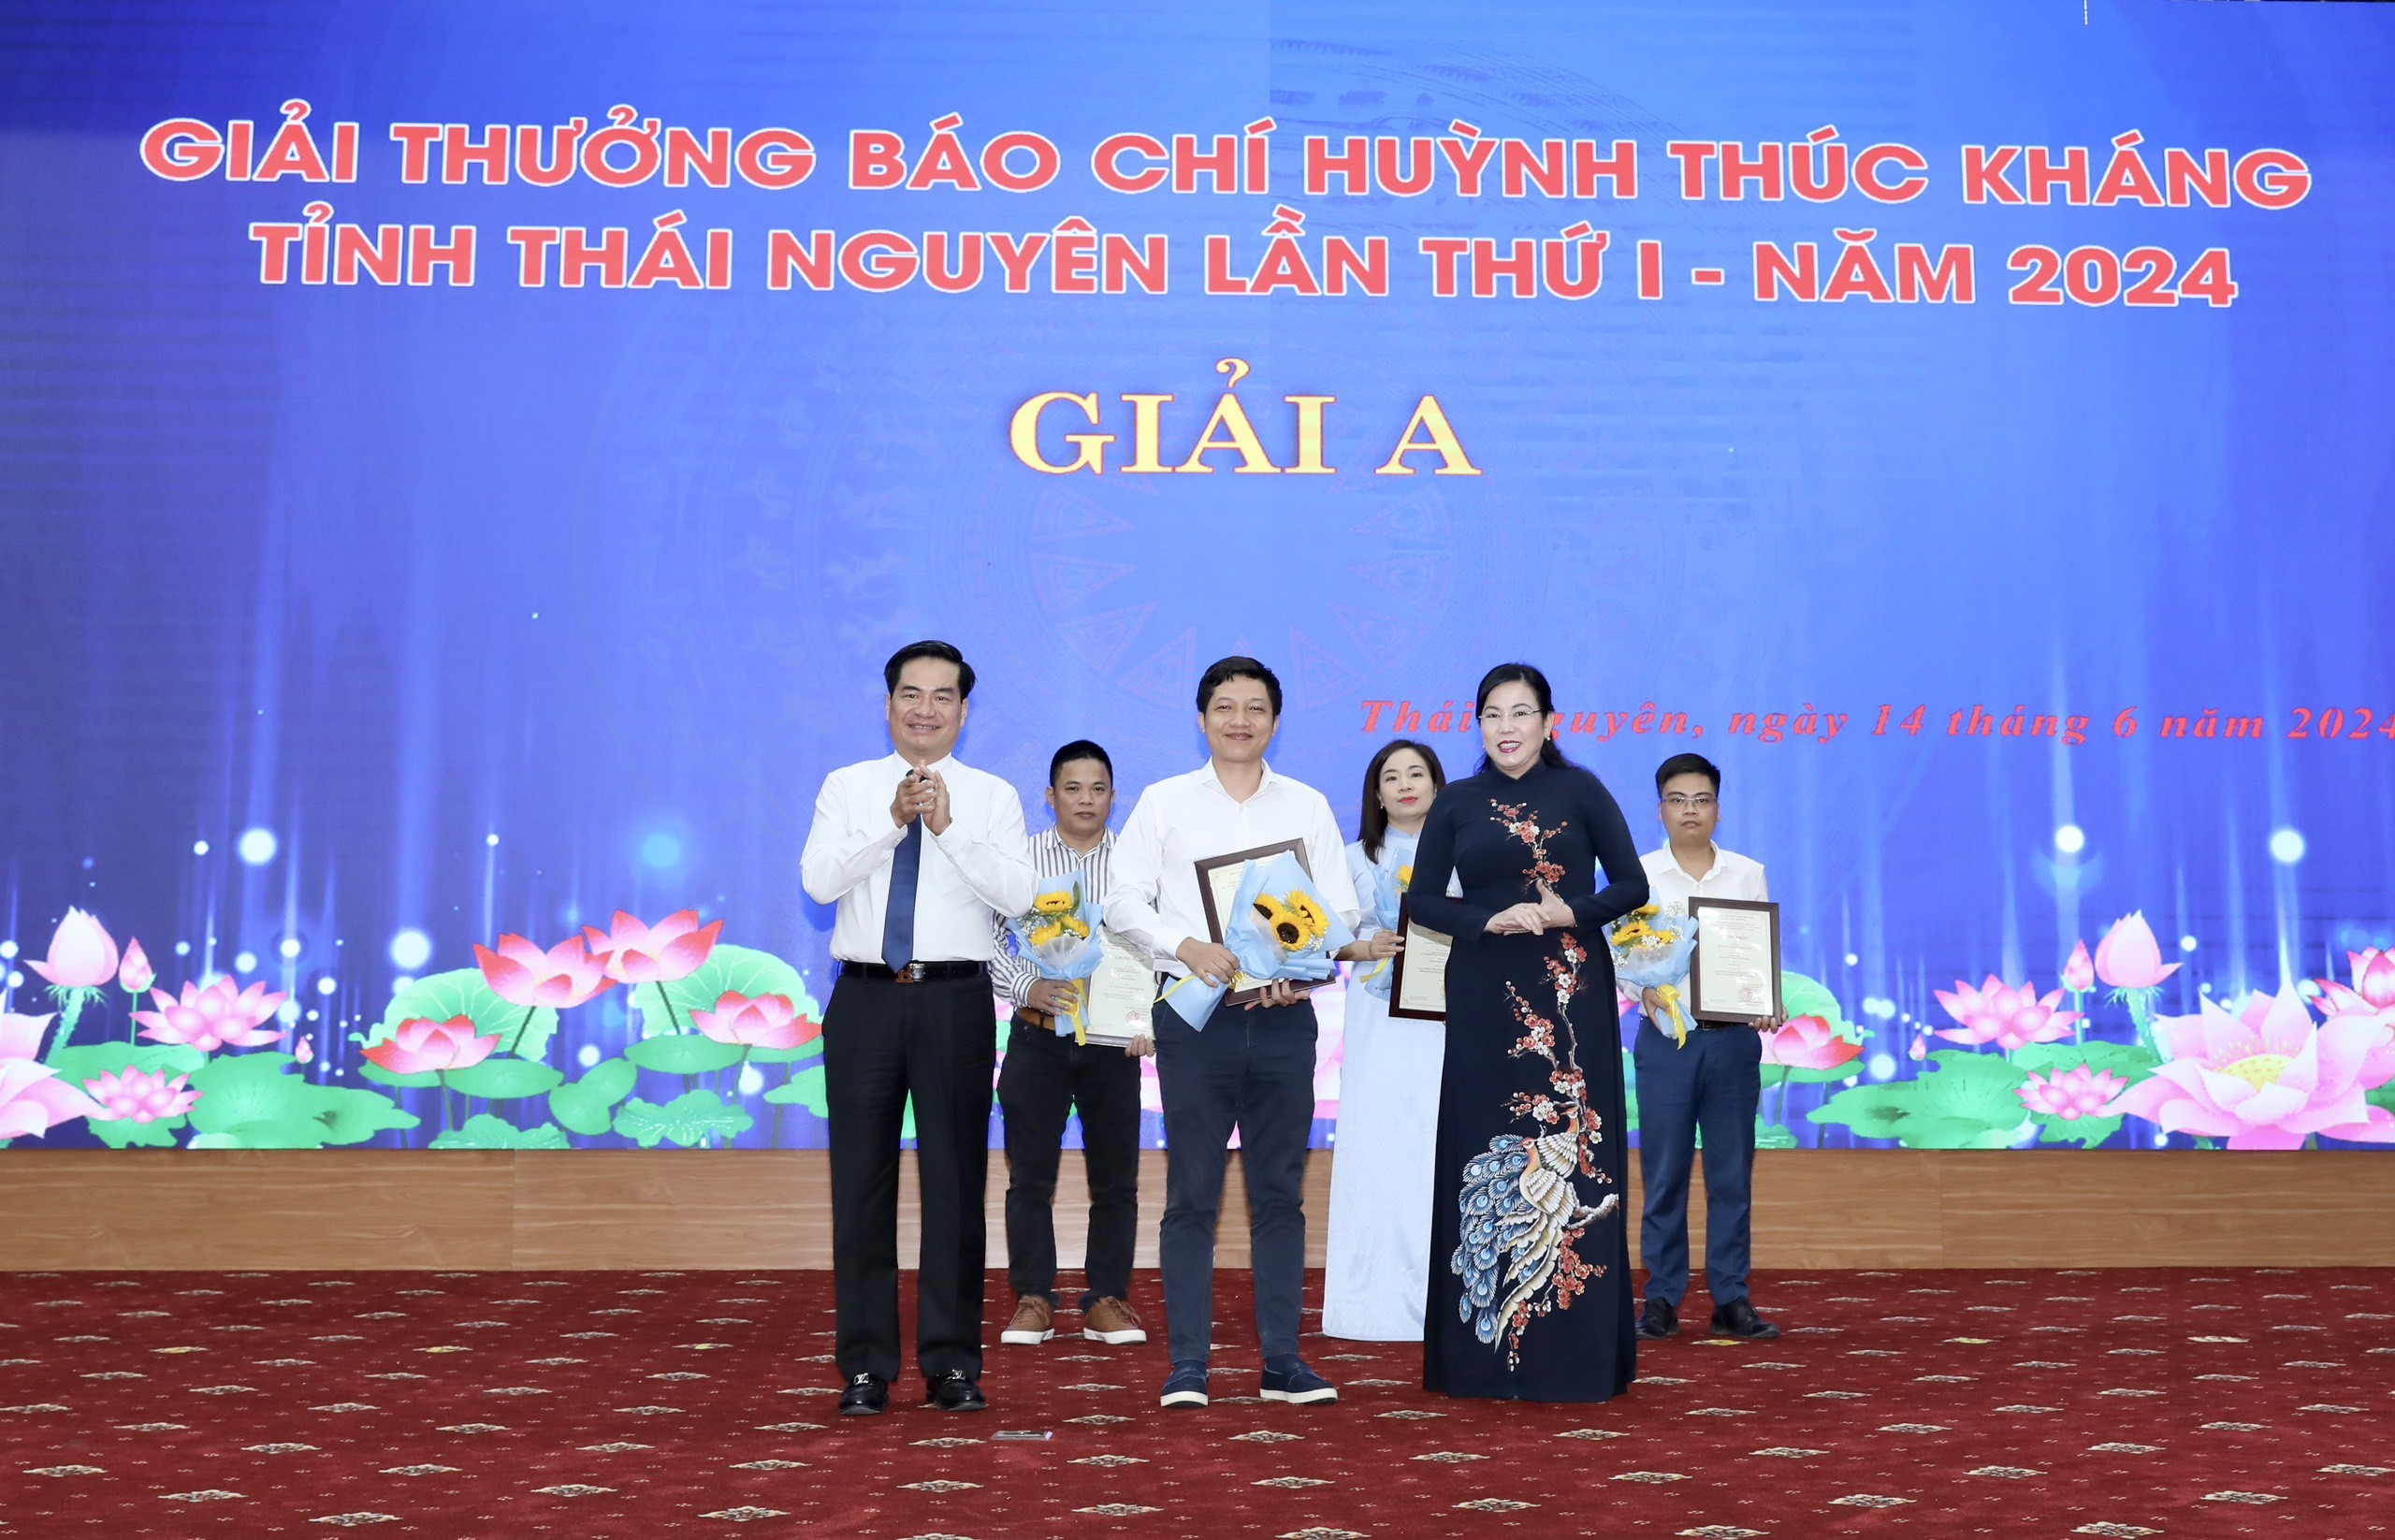 Sự kiện - Người Đưa Tin đạt giải A giải thưởng Báo chí Huỳnh Thúc Kháng